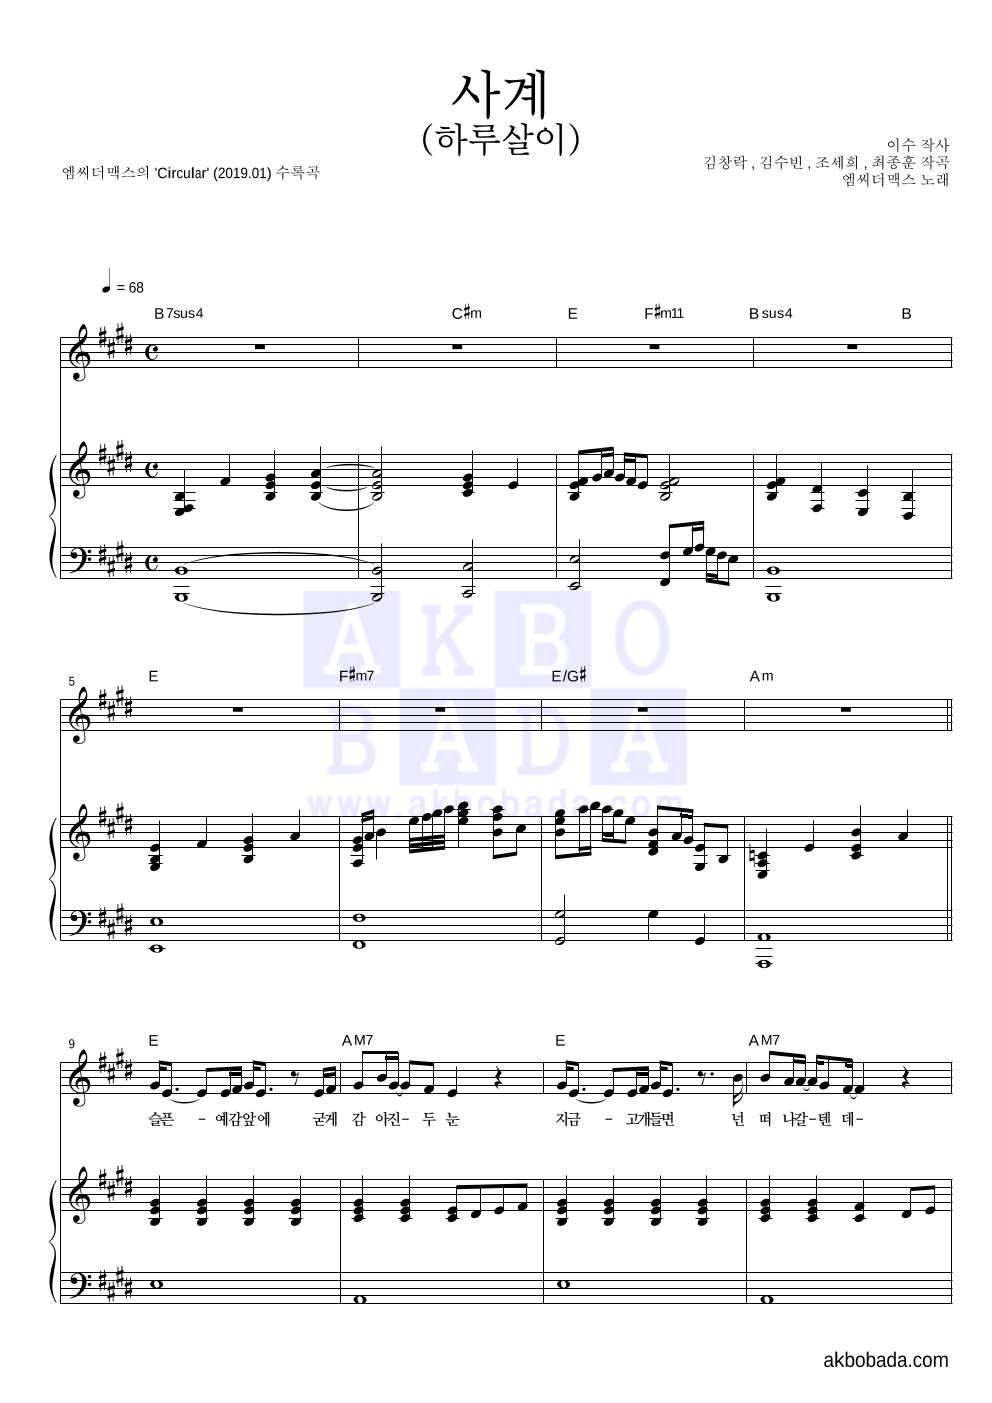 엠씨더맥스 - 사계(하루살이) 피아노 3단 악보 